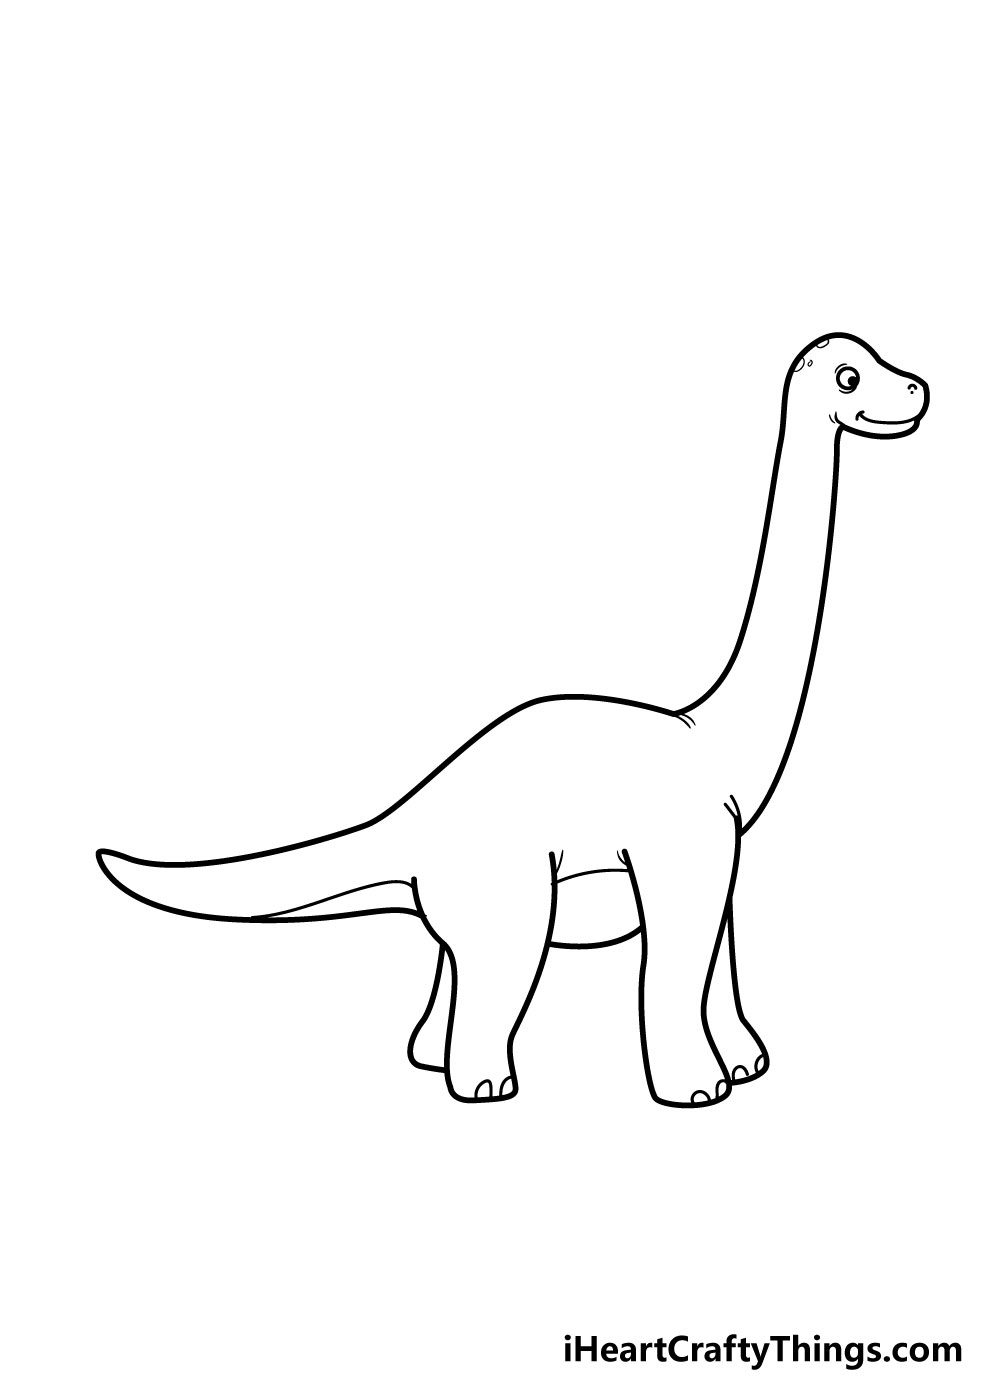 How to draw a dinosaur 7 - Hướng dẫn cách vẽ con khủng long đơn giản với 8 bước cơ bản